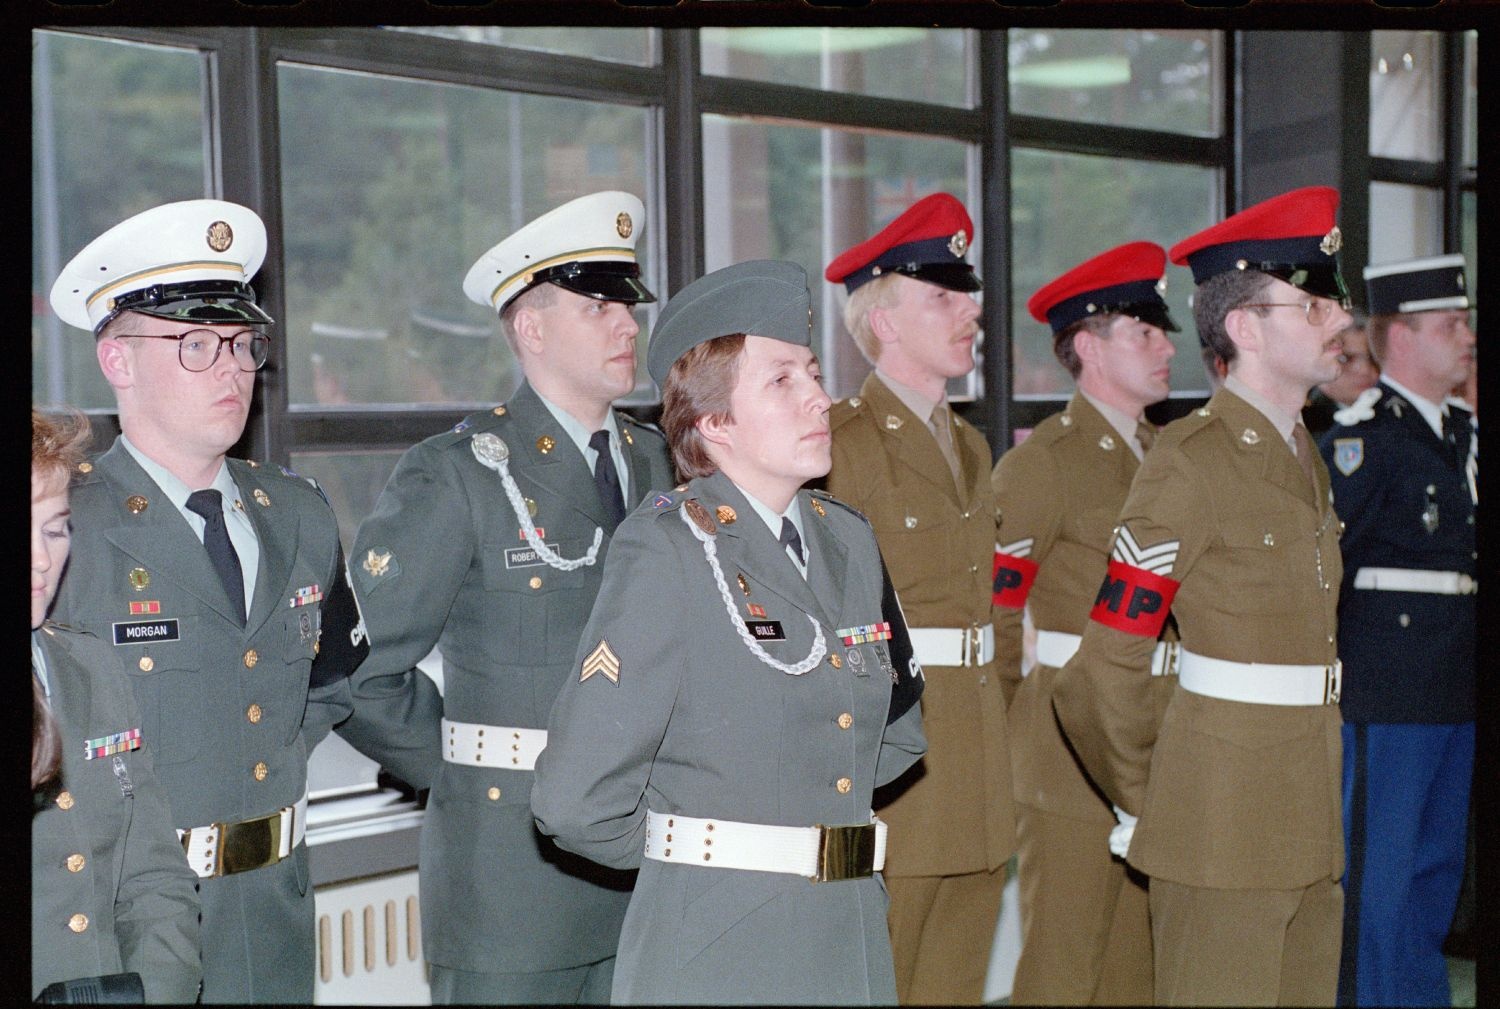 Fotografie: Schließung des Allied Checkpoint Bravo in Berlin-Zehlendorf